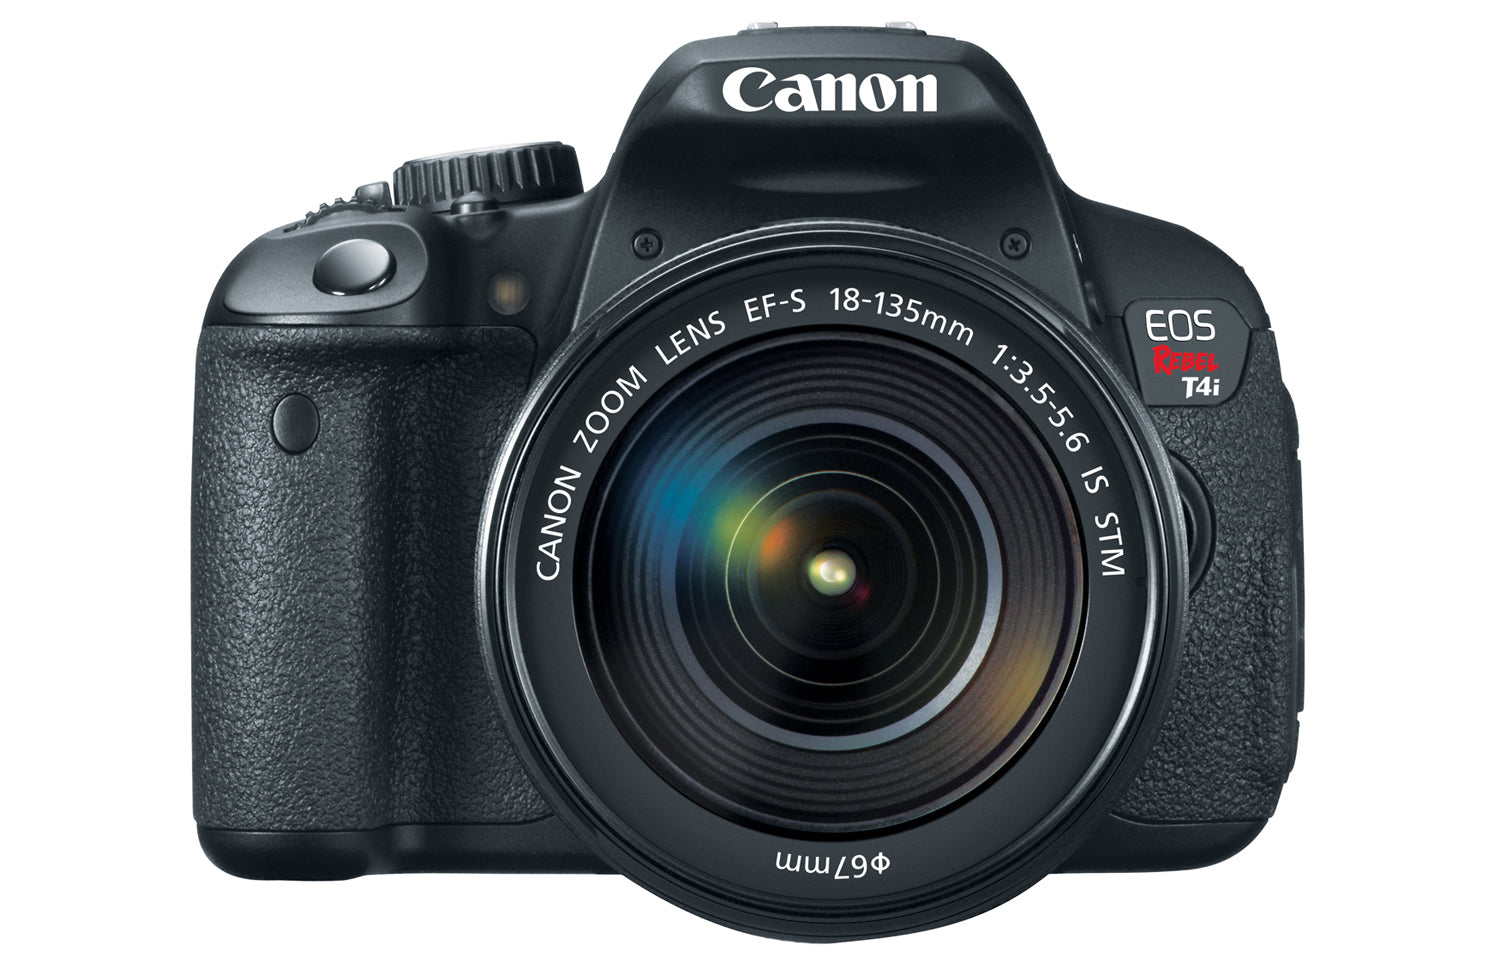 Canon Announces New EOS Rebel T4i DSLR Camera